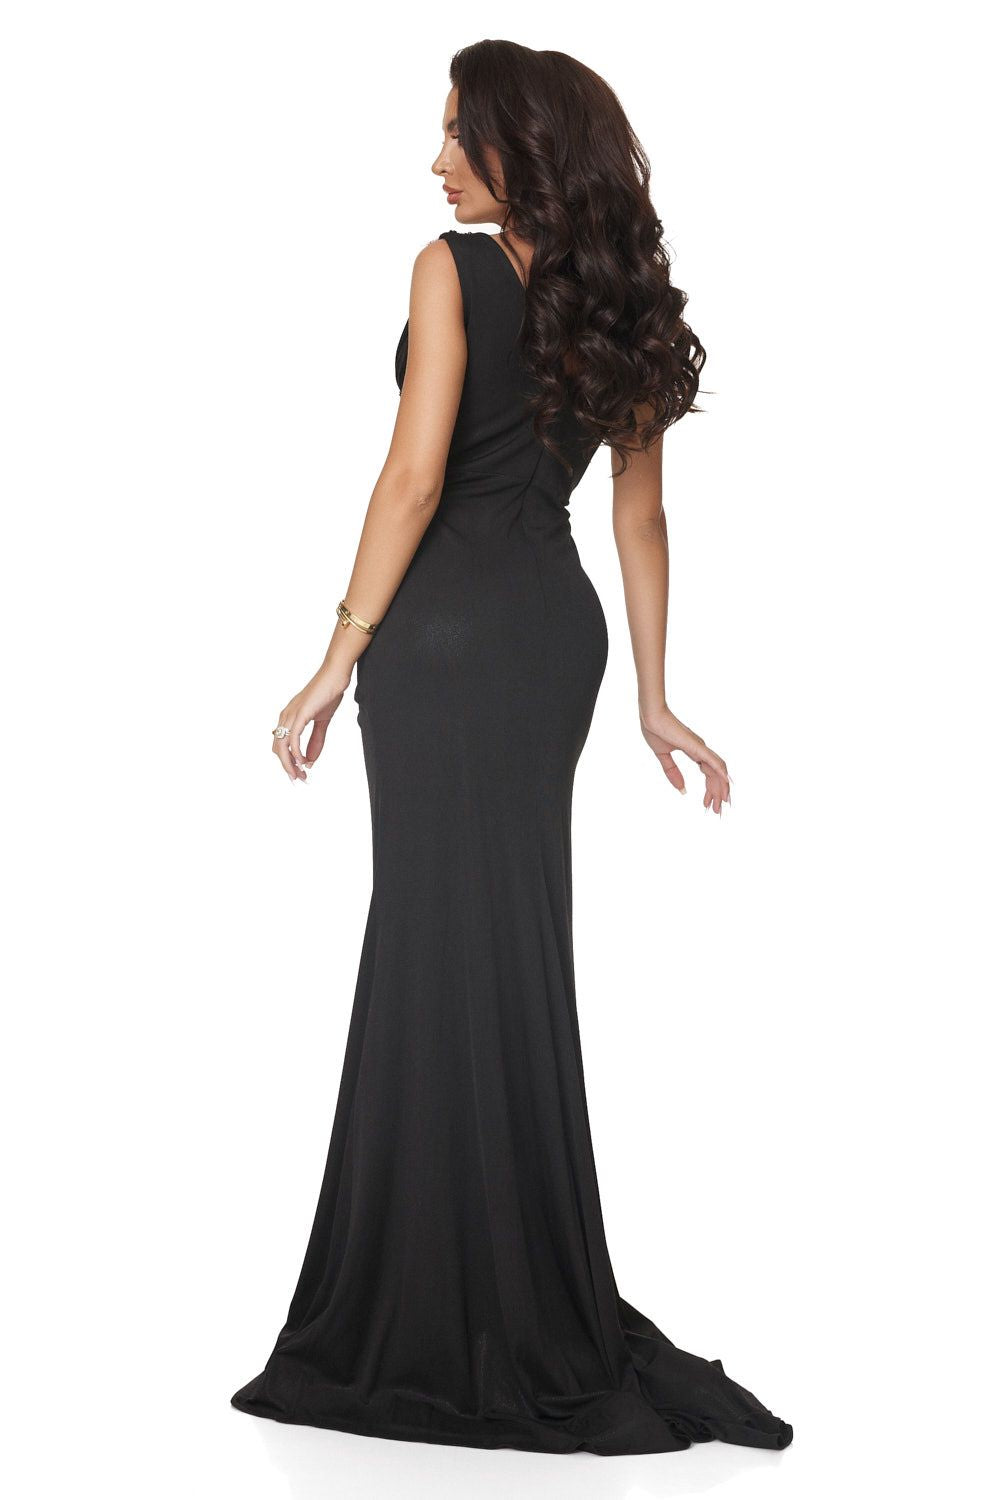 Long black dress for women Demissa Bogas